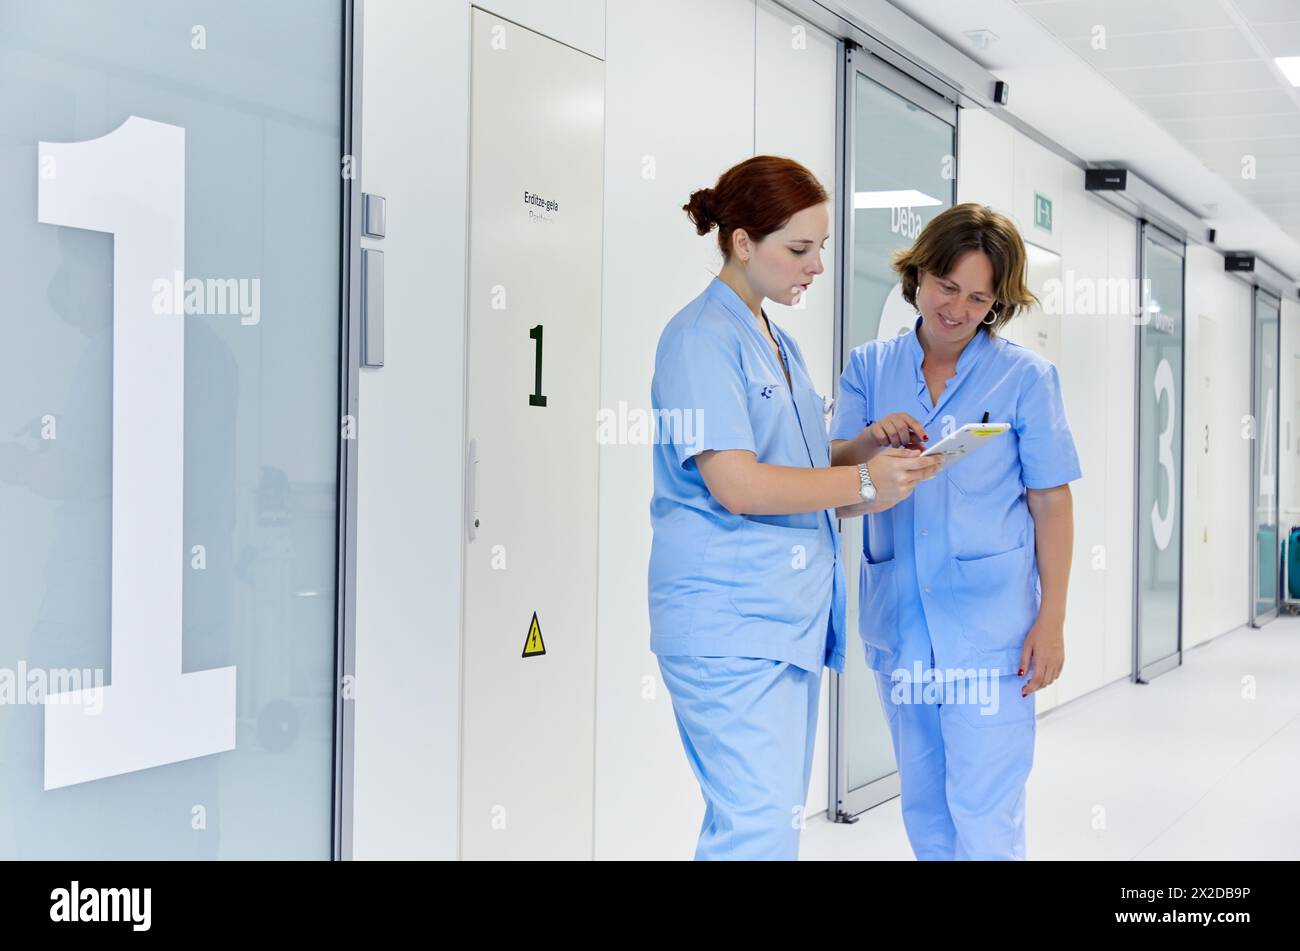 Nurses with tablet, Hall, Delivery room, Maternity ward, Hospital Donostia, San Sebastian, Gipuzkoa, Basque Country, Spain Stock Photo